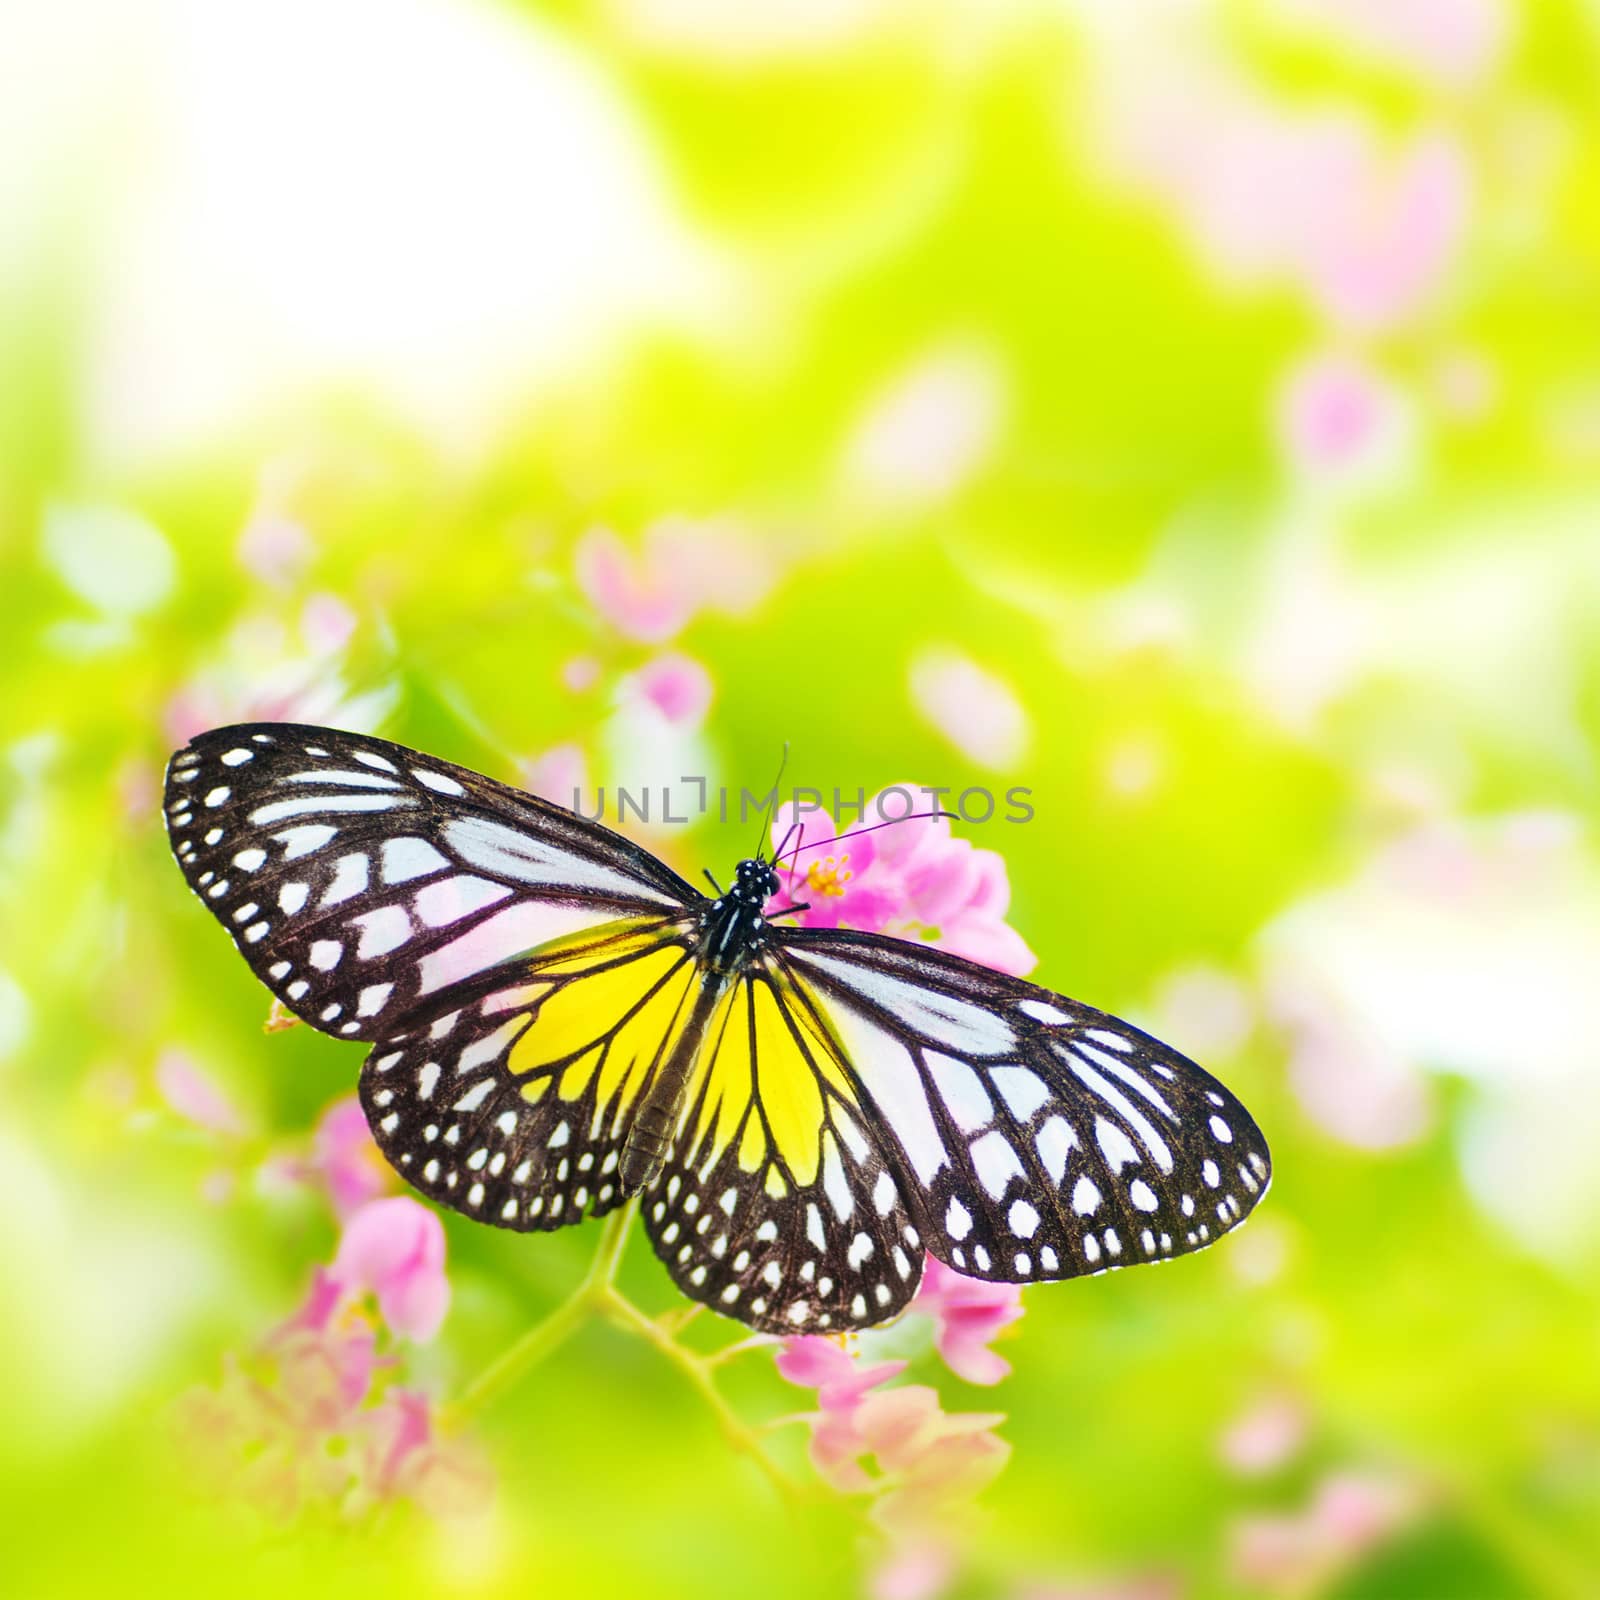 Butterfly on flower by szefei